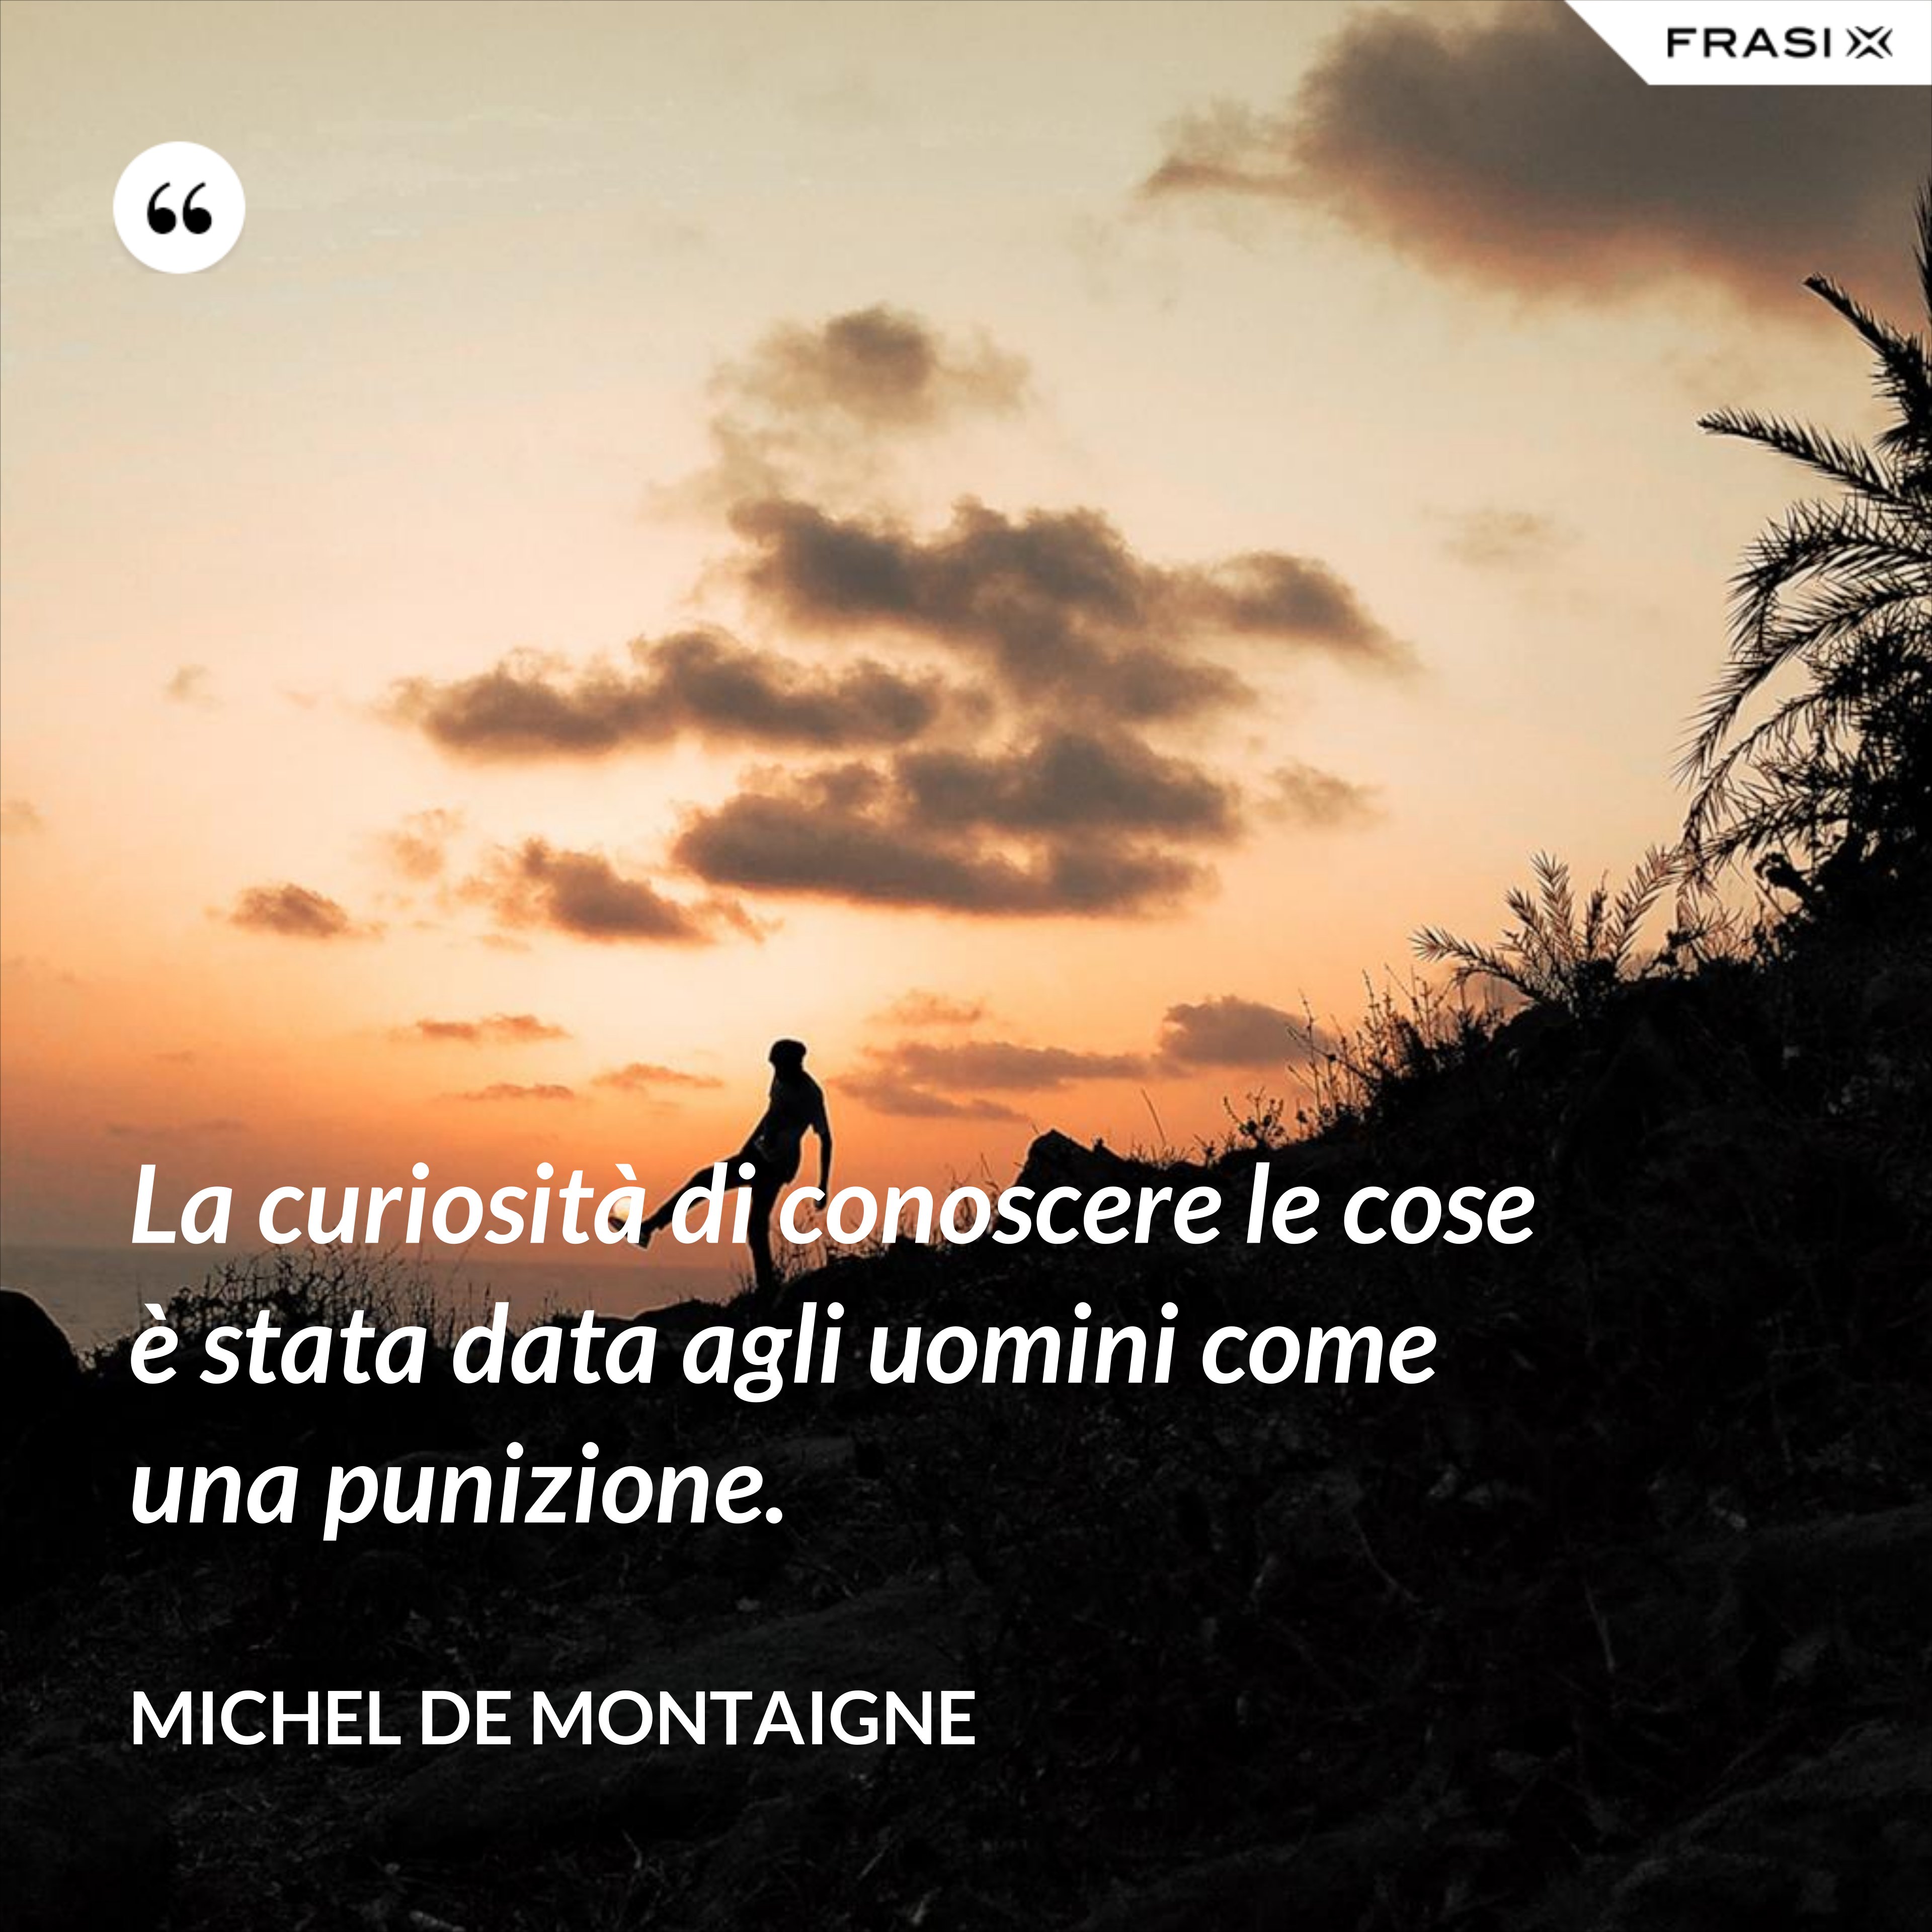 La curiosità di conoscere le cose è stata data agli uomini come una punizione. - Michel de Montaigne